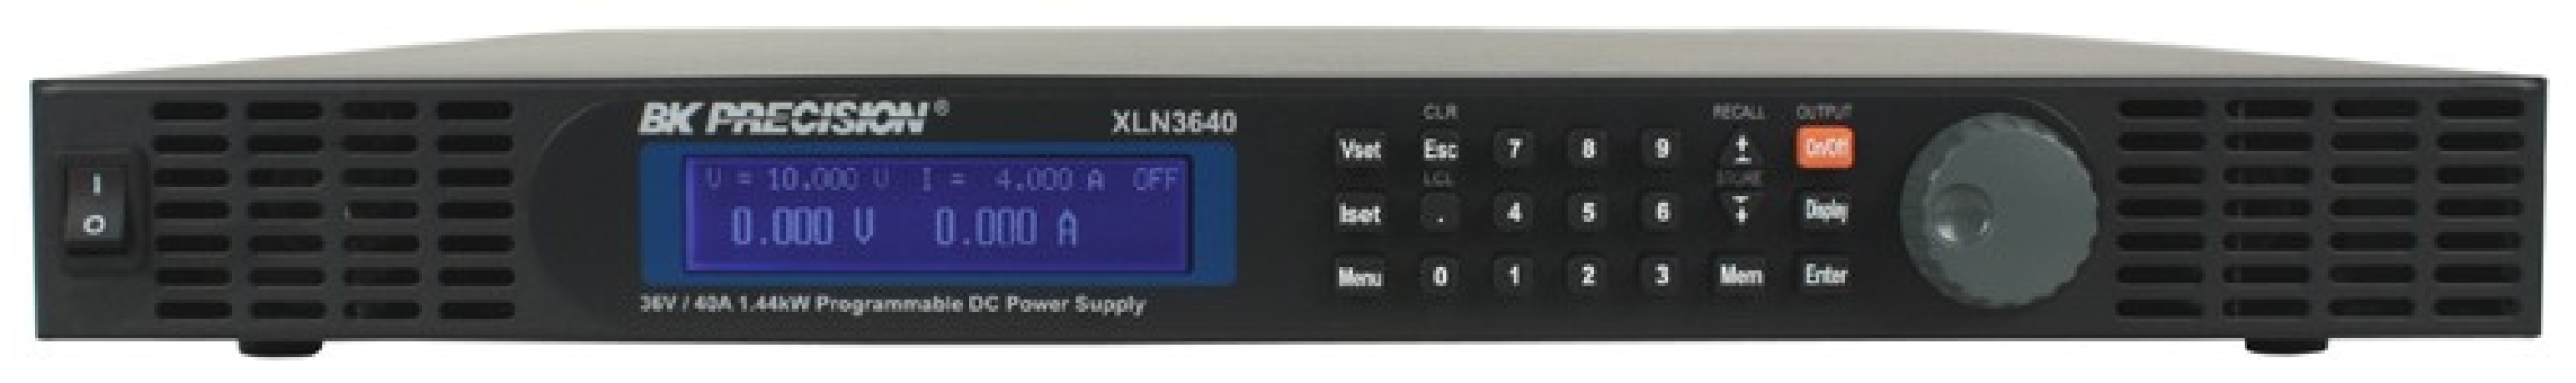 High Power Programmable DC Power Supplies Model XLN3640-GL